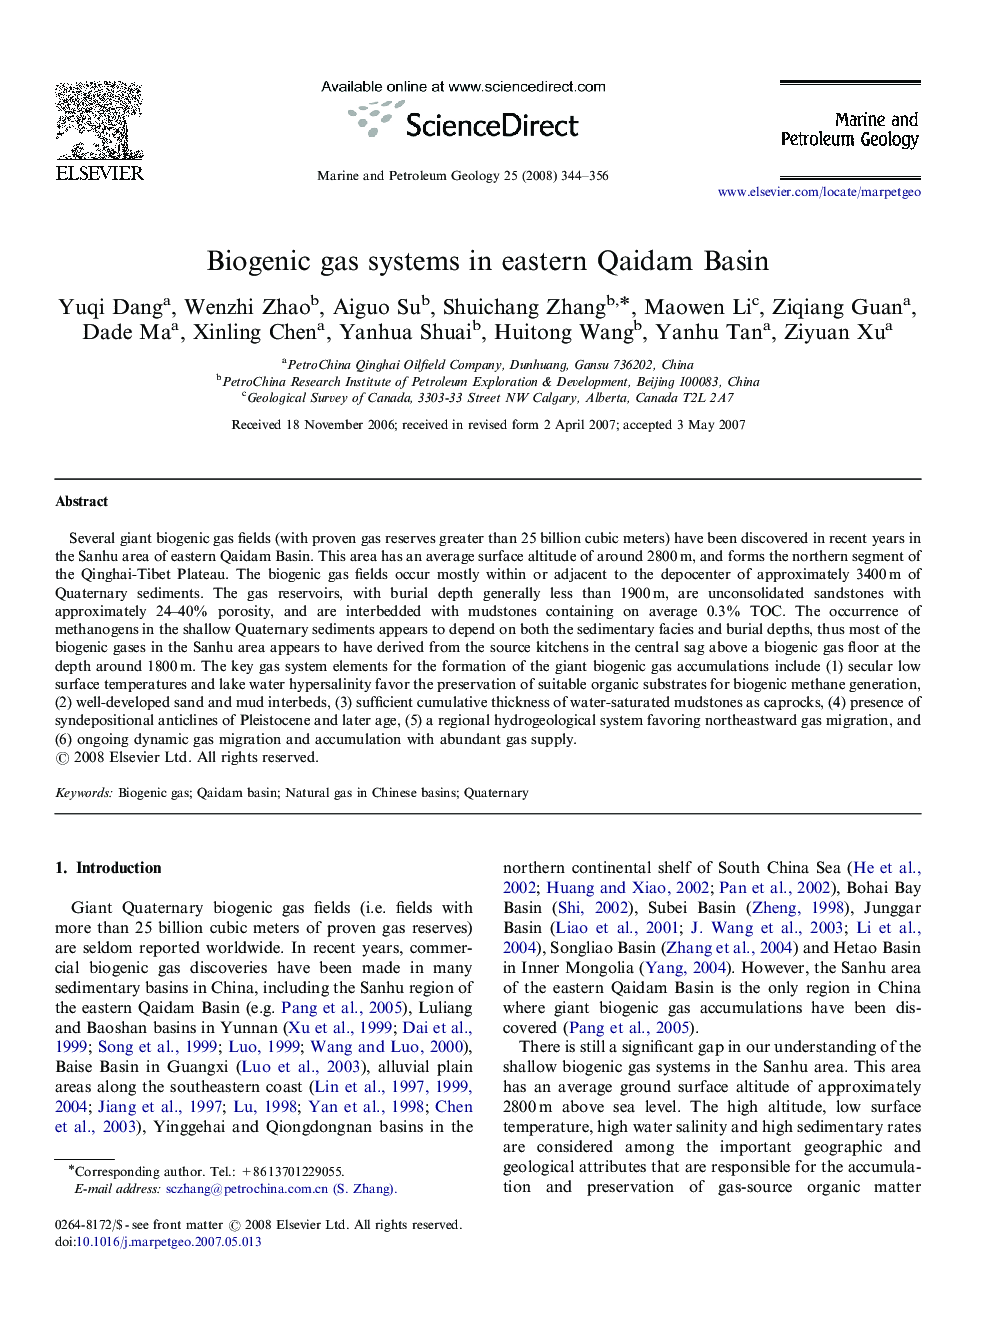 Biogenic gas systems in eastern Qaidam Basin